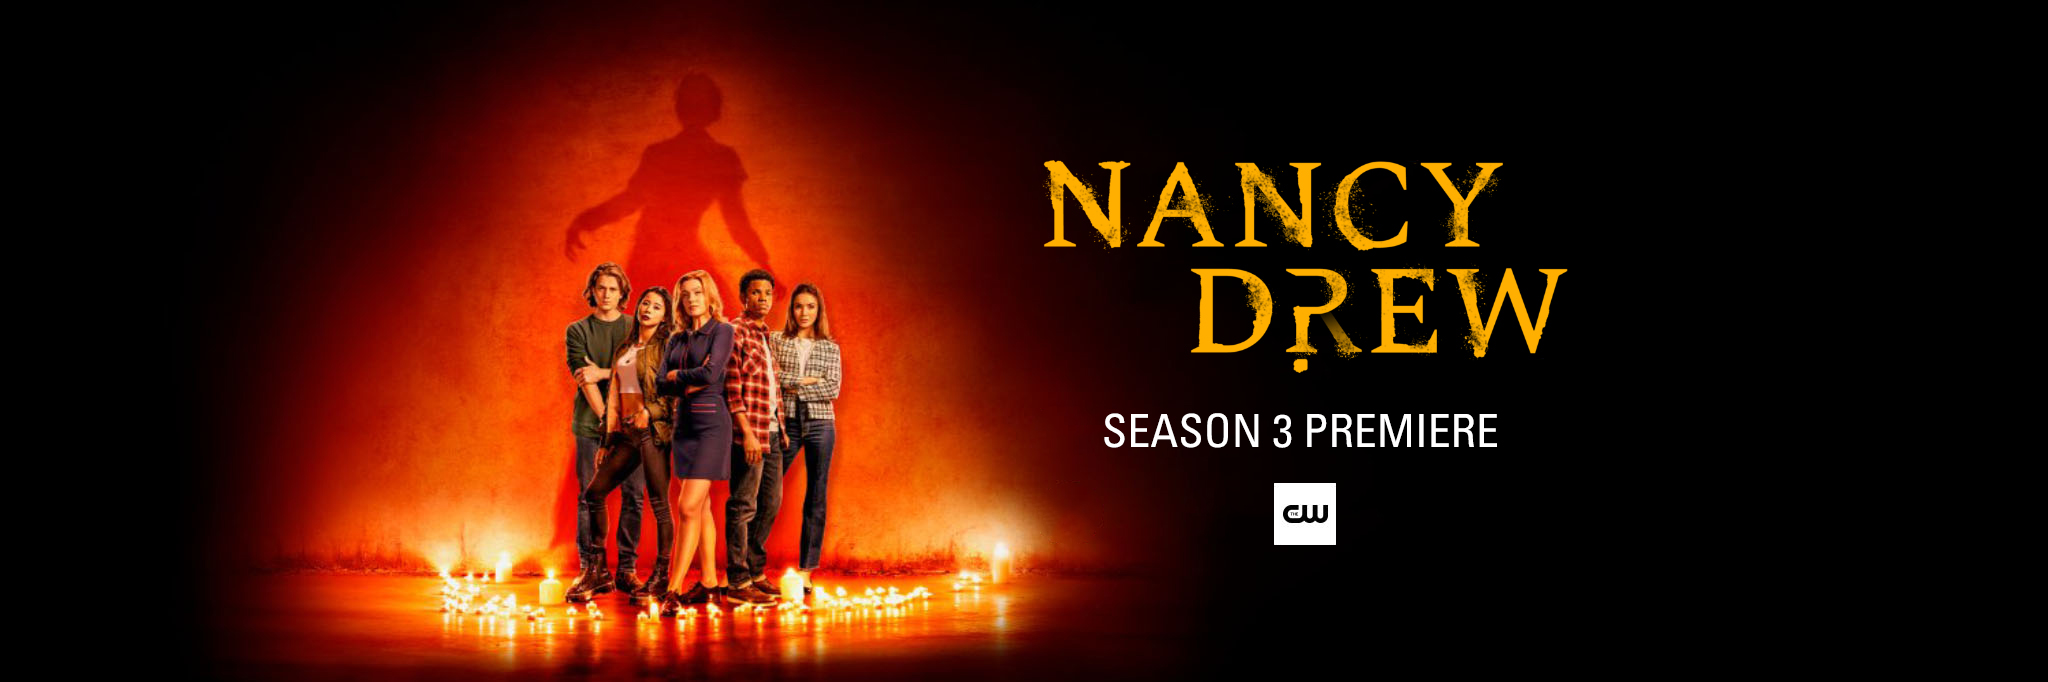 Nancy Drew Season 3 Premiere!